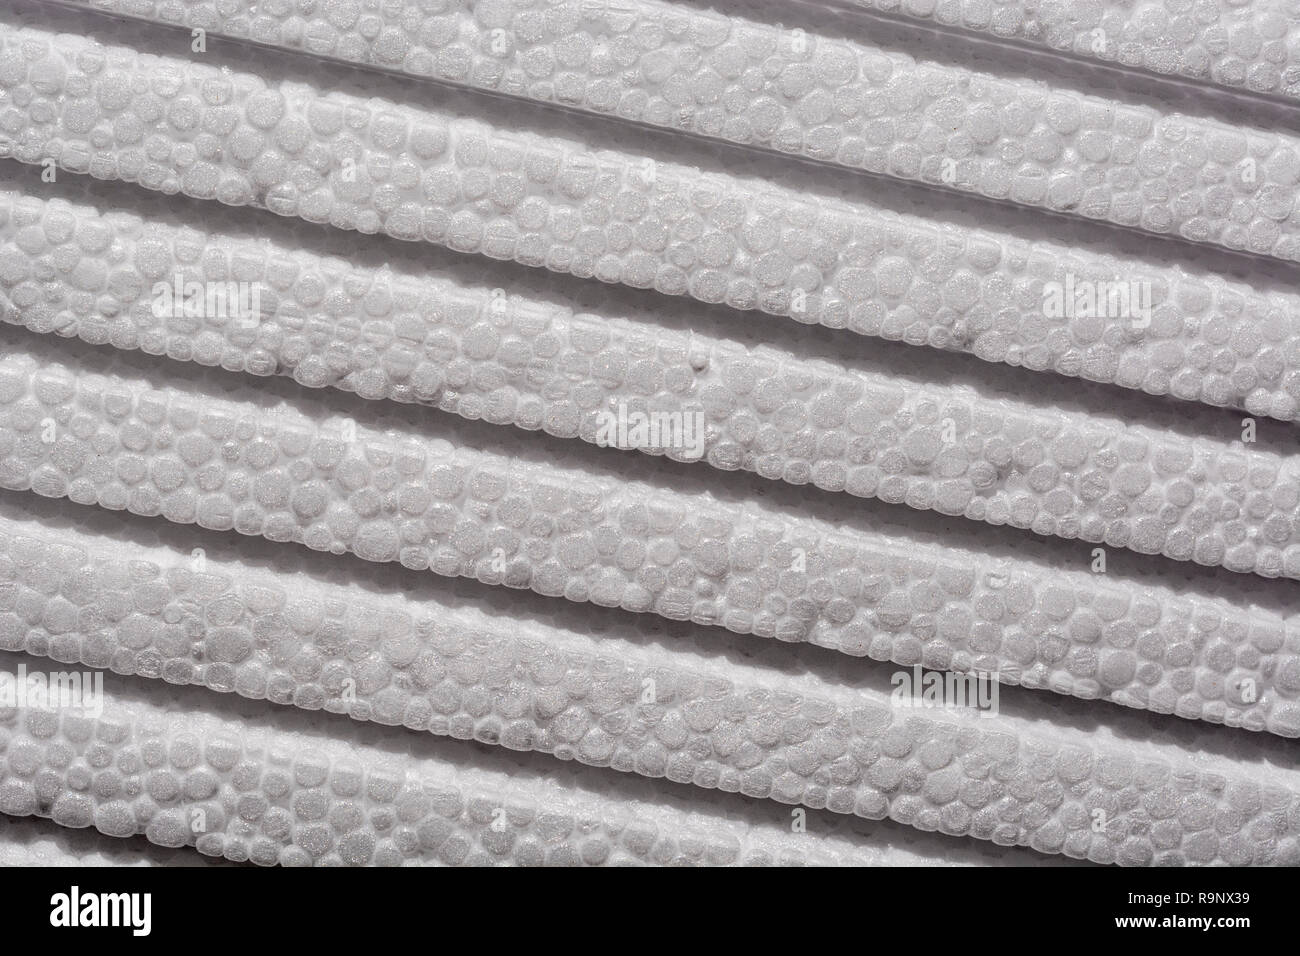 Stack Of Polystyrene Foam Used As Foam Packaging Or Ceiling